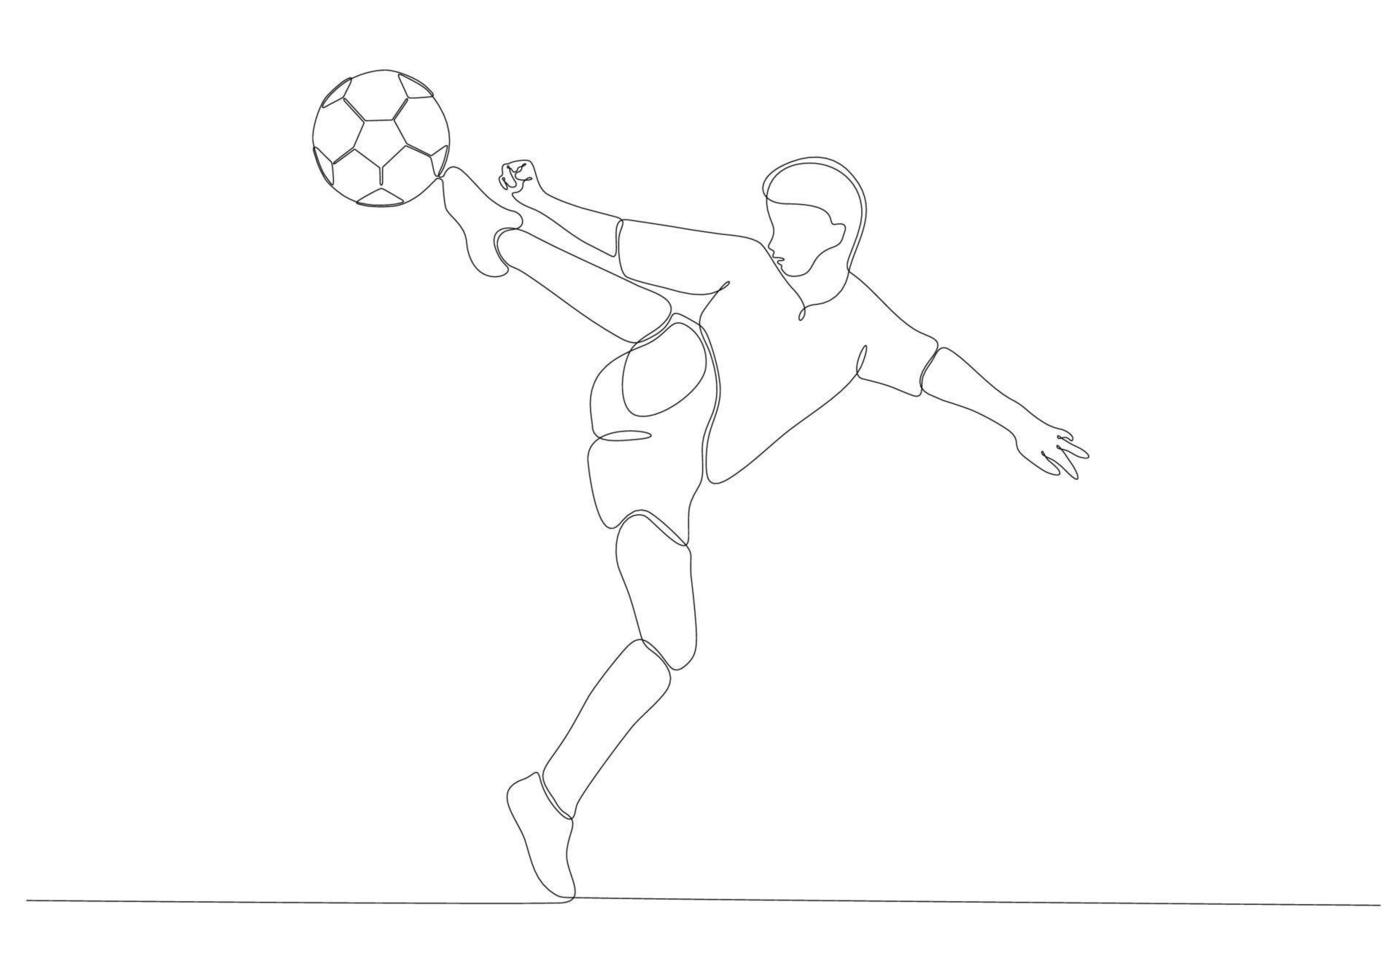 kontinuerlig linjeteckning av manlig fotbollsspelare som sparkar bollen. en rad konst av ung kvinnlig fotbollsspelare som dribbler och jonglerar med bollen. vektor illustration